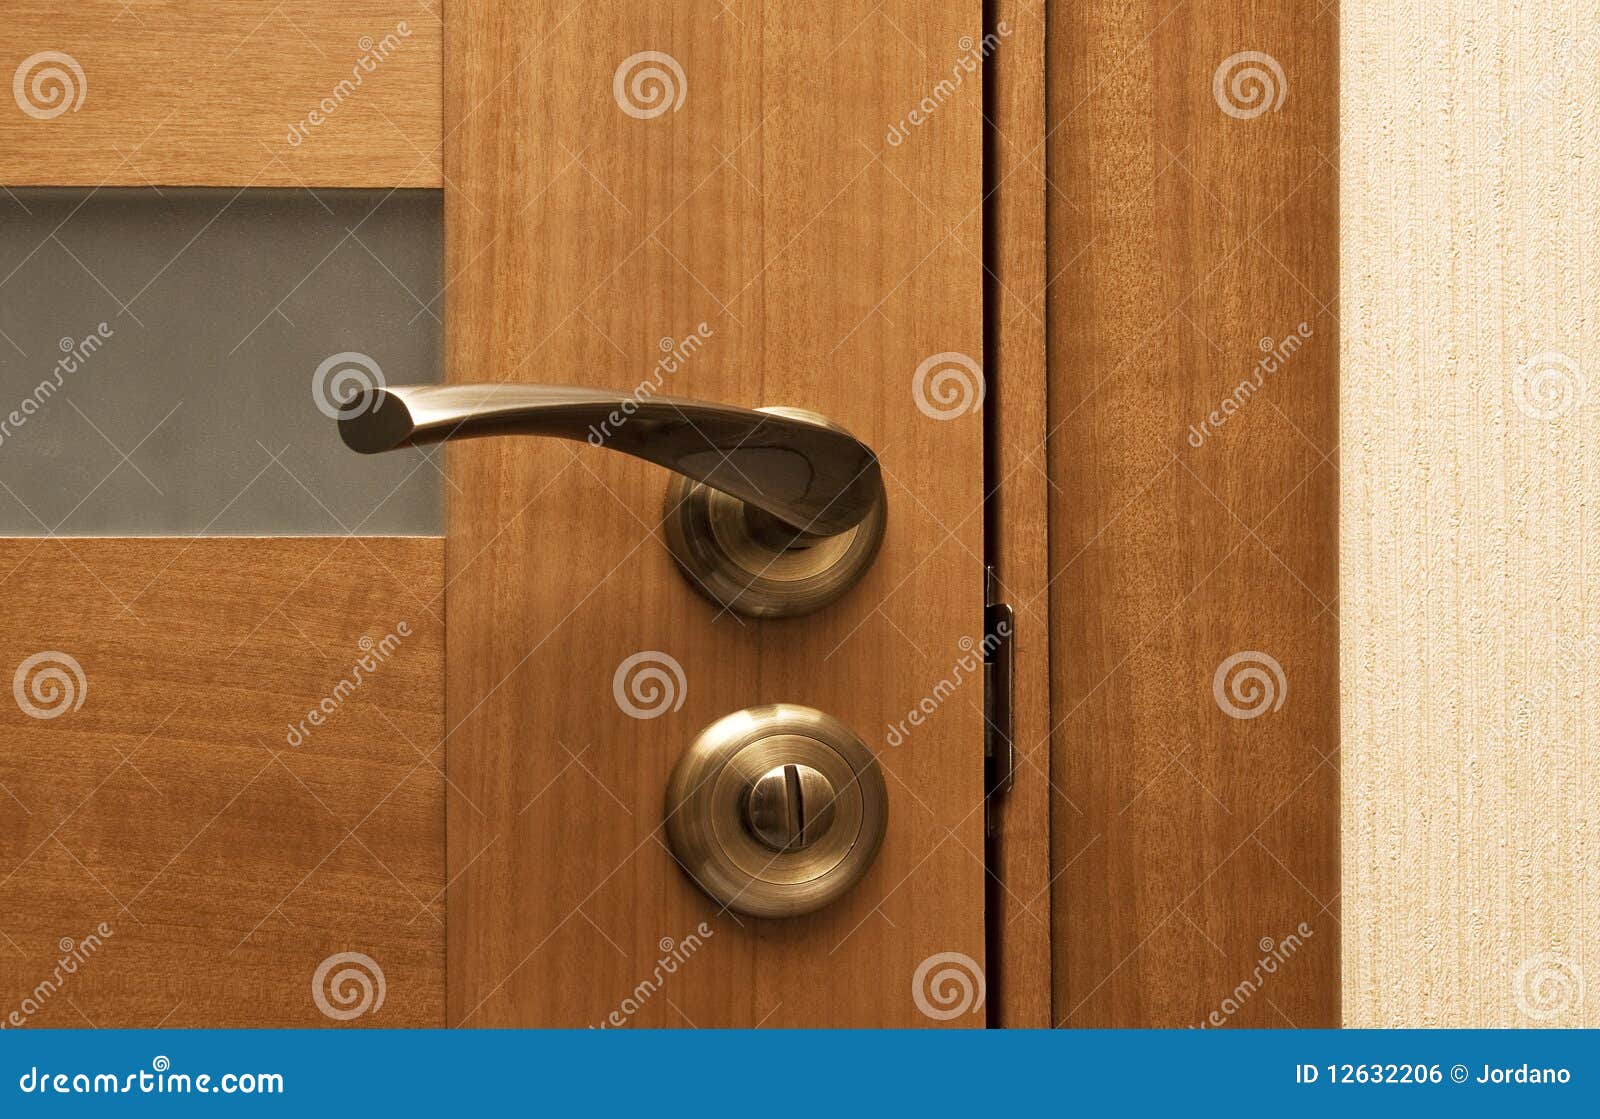 wooden door with the lock